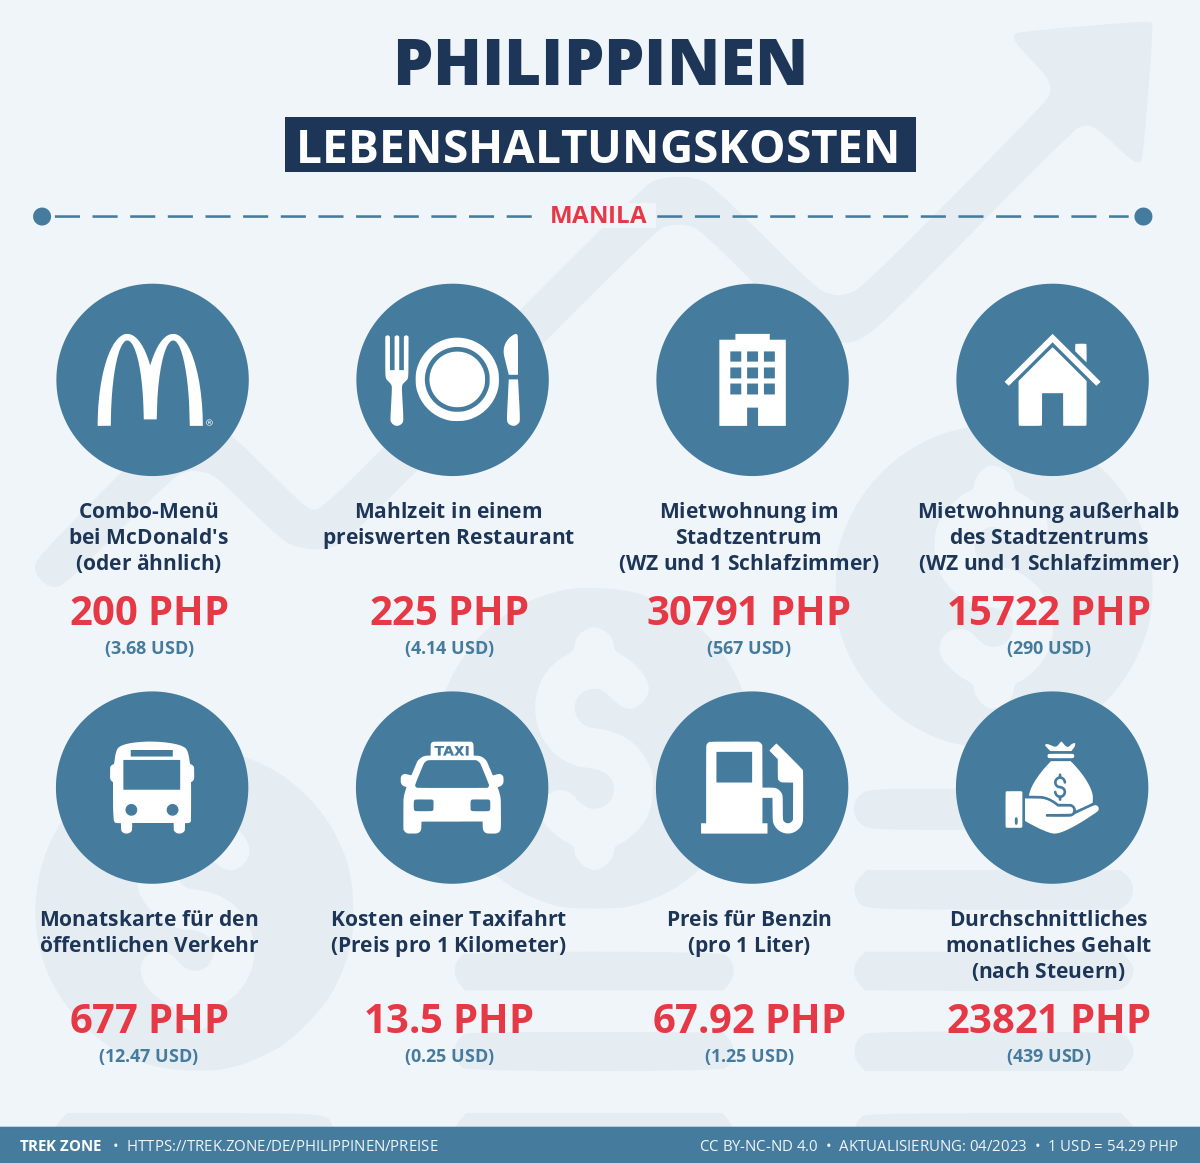 preise und lebenskosten philippinen